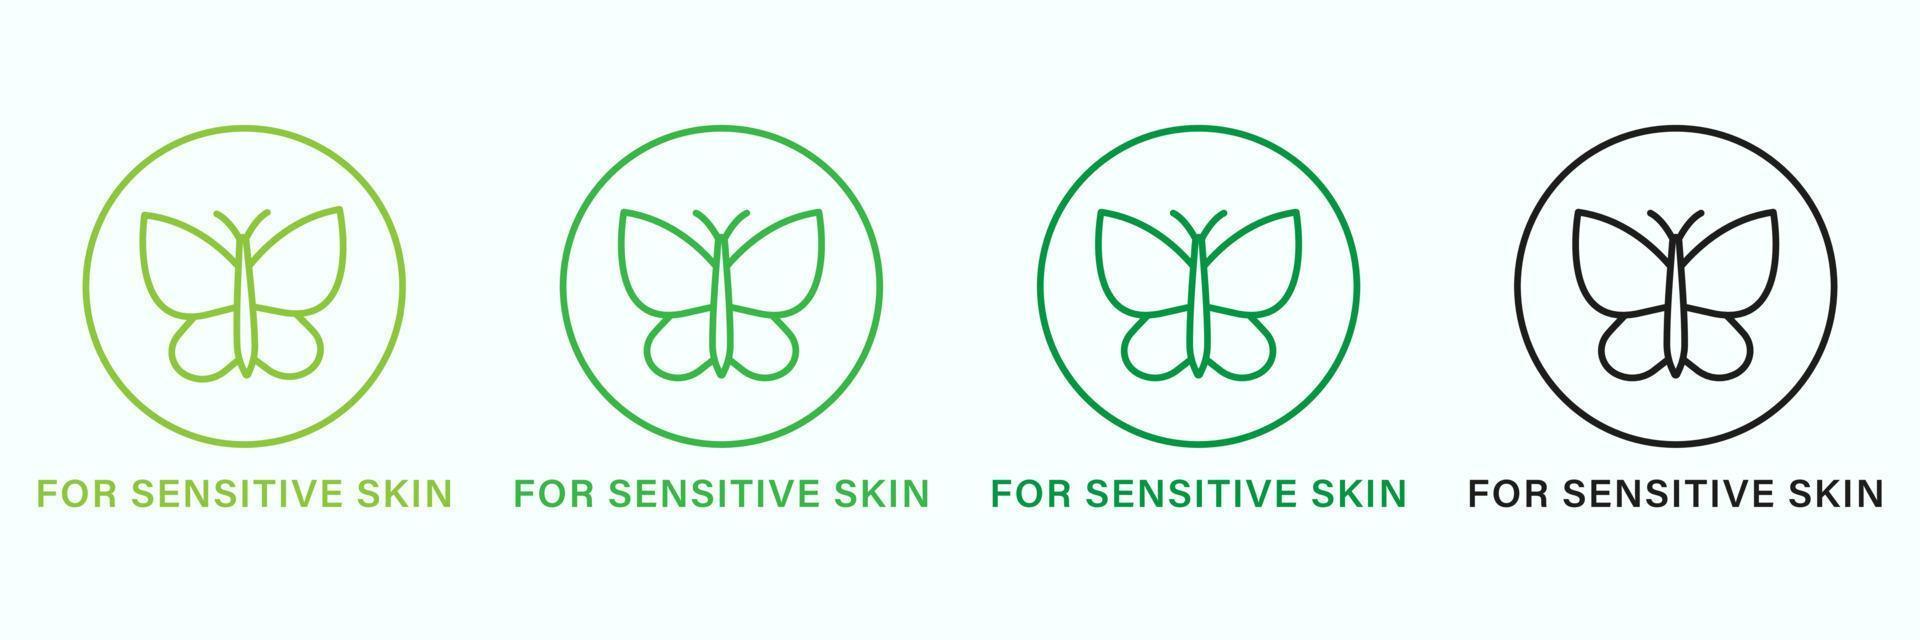 dermatologia produtos para sensível pele linha verde e Preto ícone definir. hipoalergênico produtos para pele face pictograma. dermatologicamente ícone do sensível pele símbolo. isolado vetor ilustração.